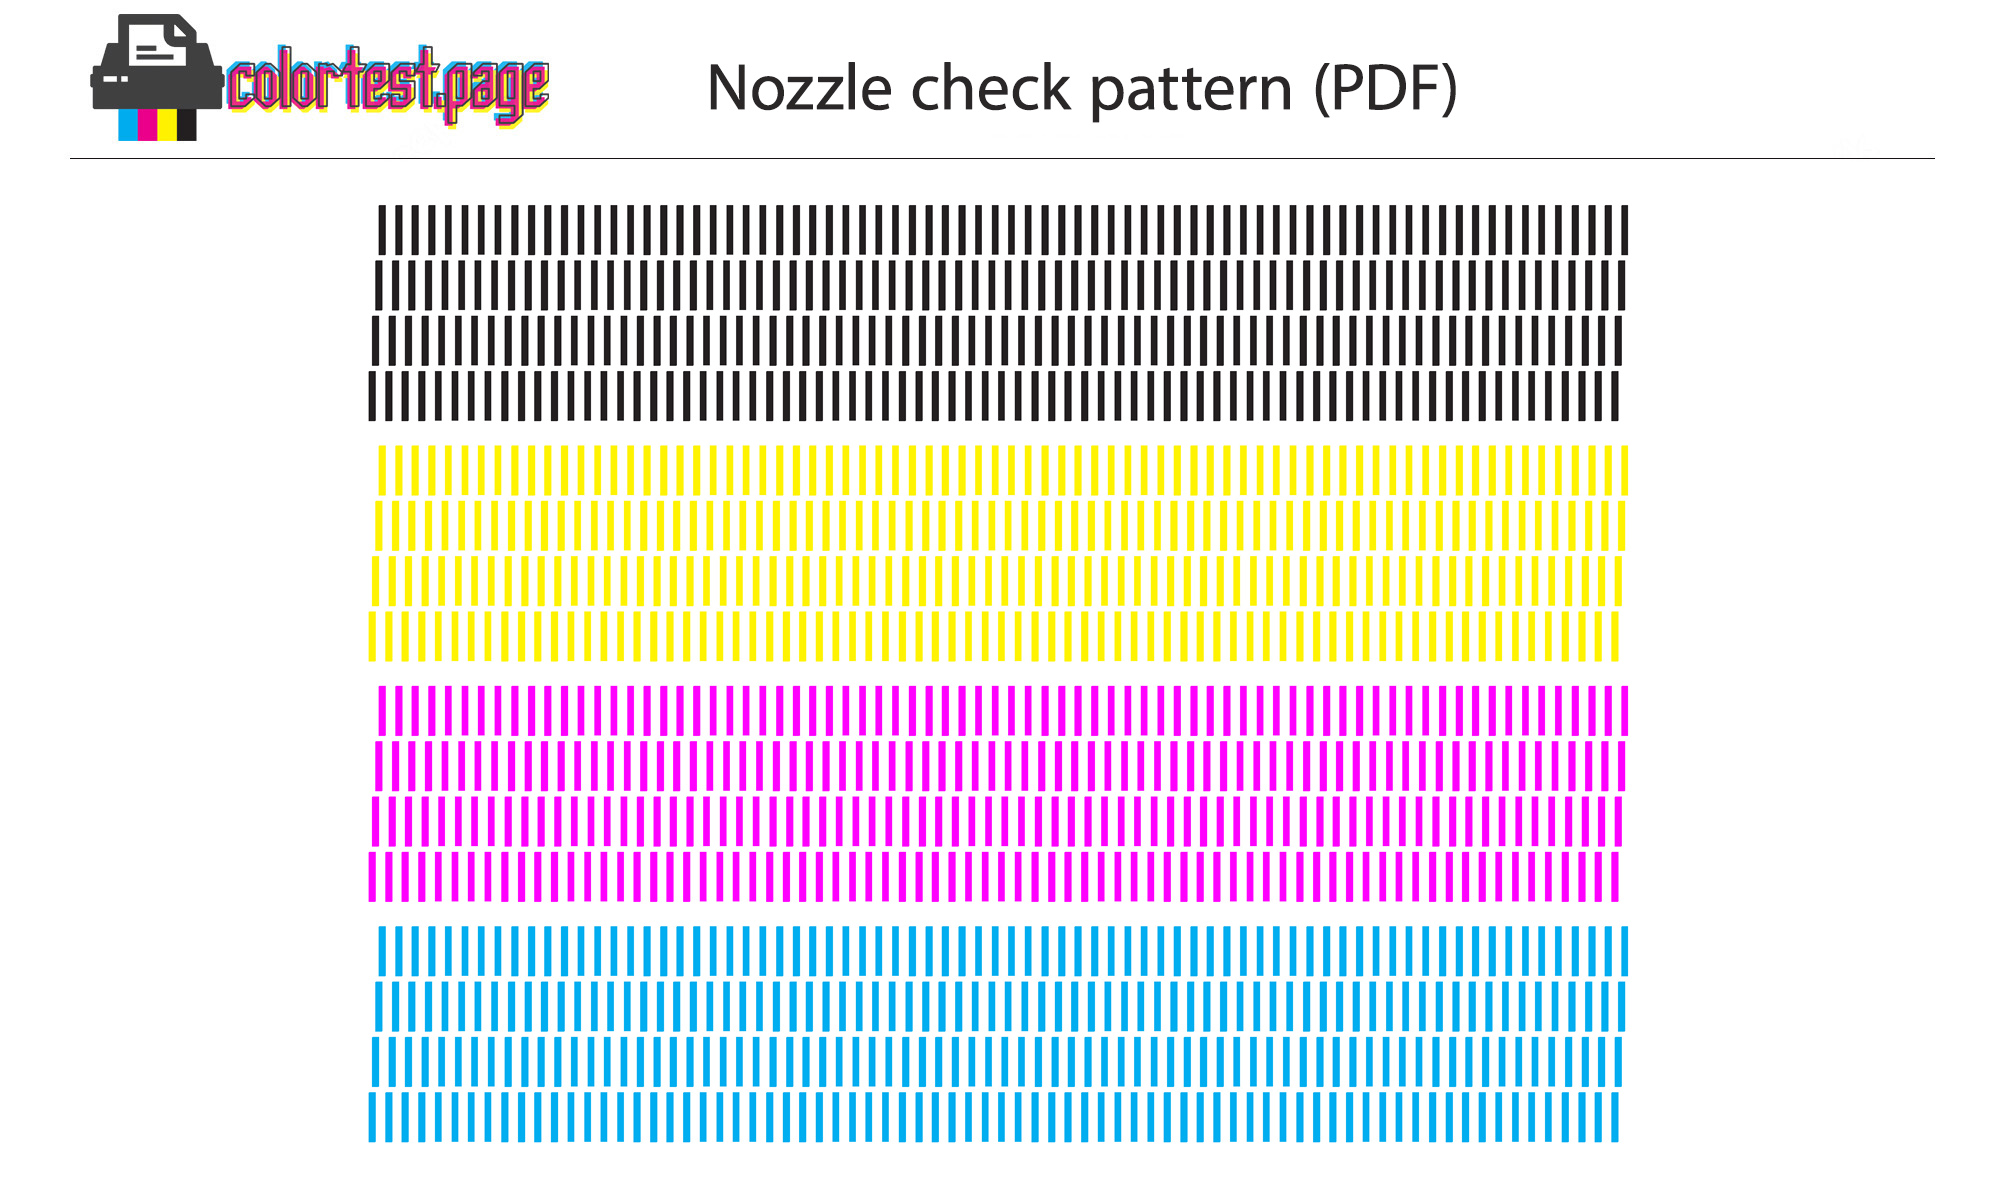 nozzle check pattern pdf